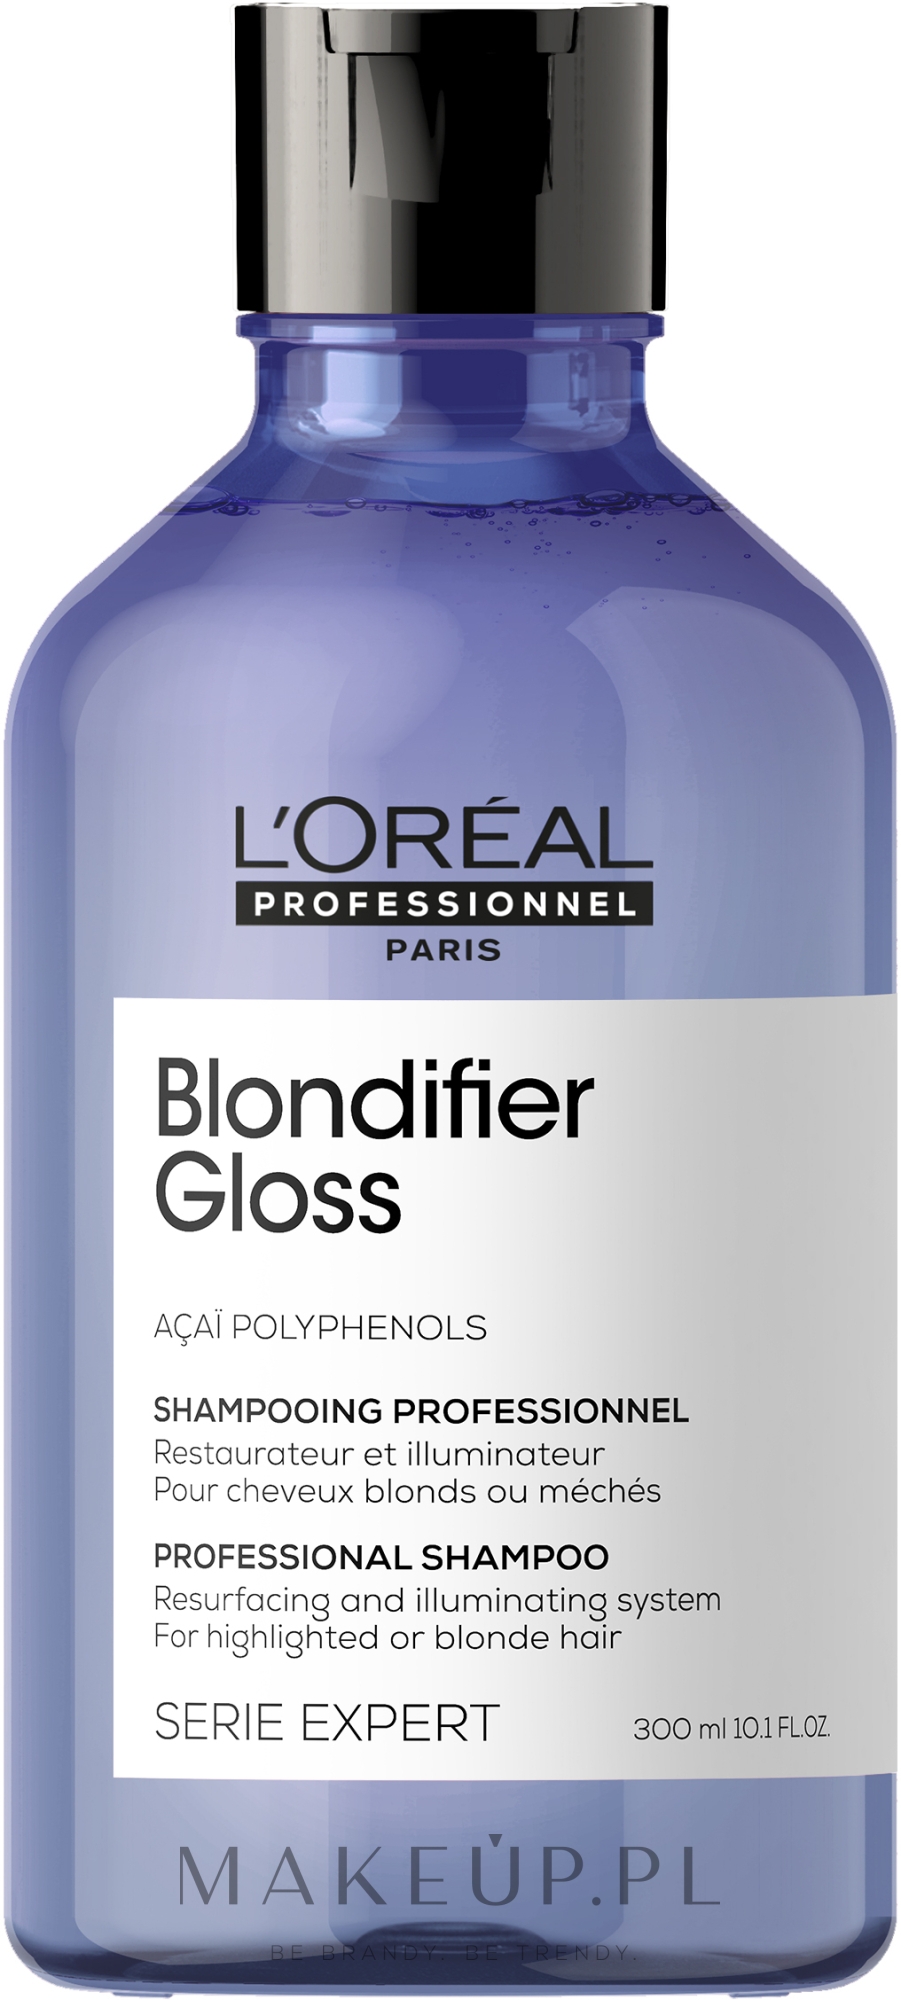 szampon serie expert dla blondynek